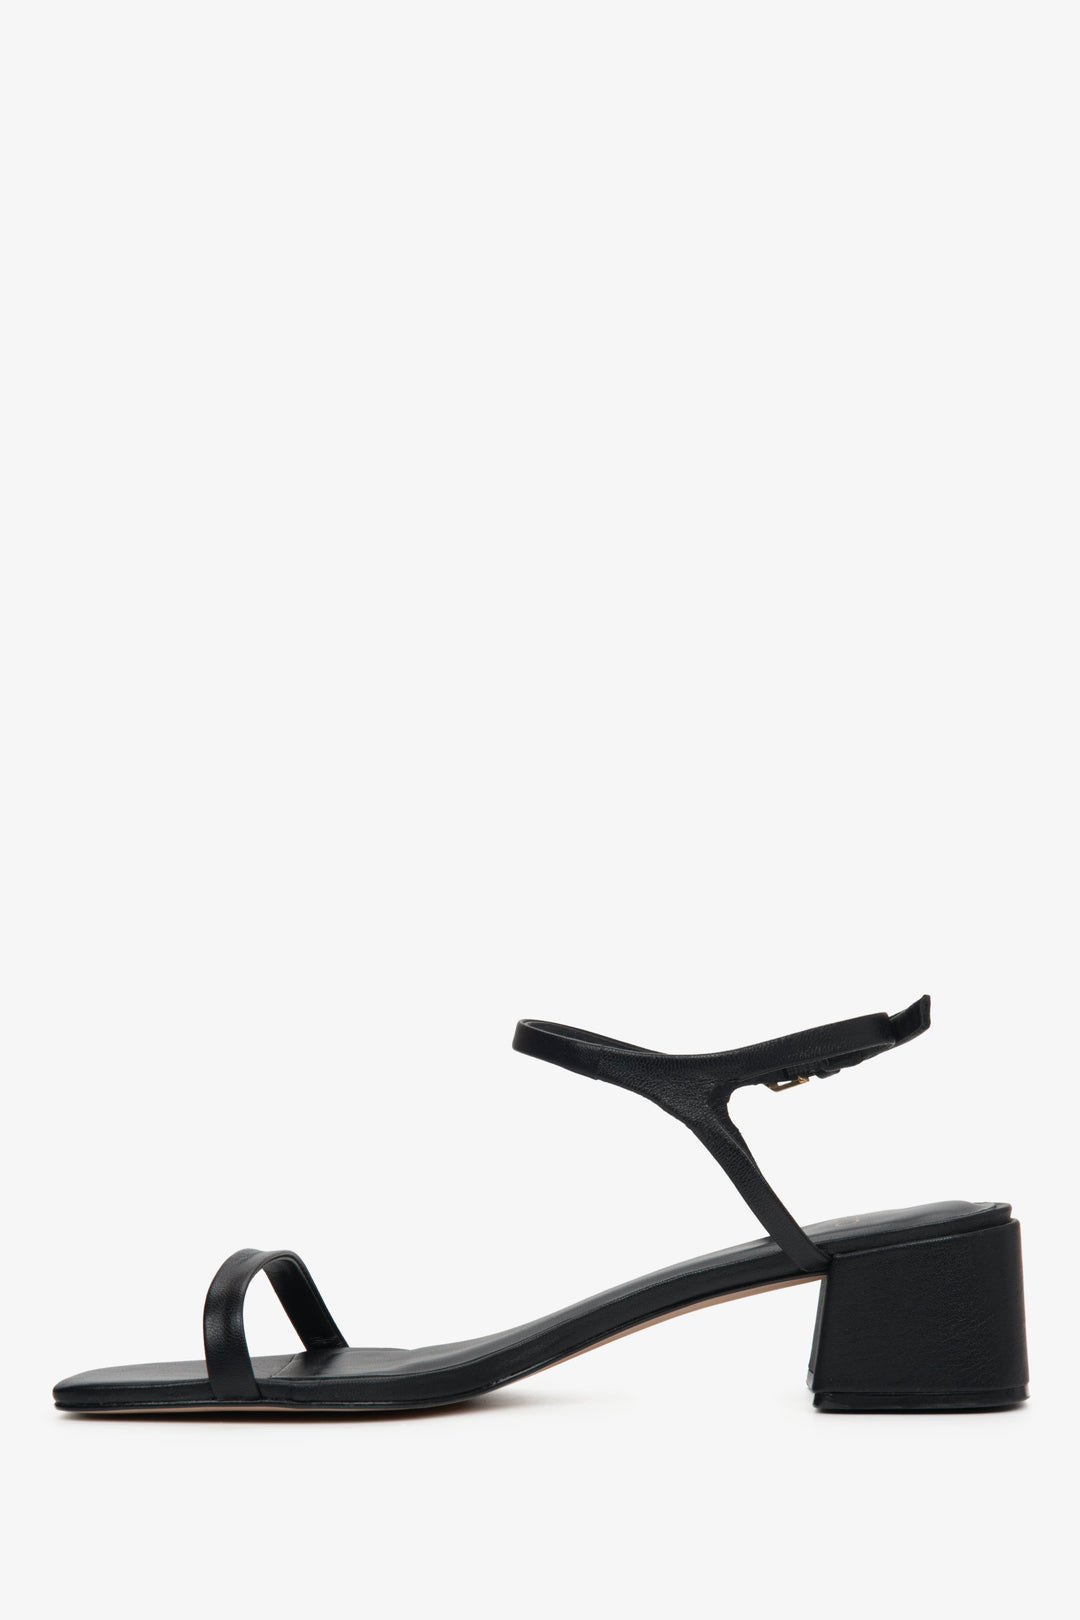 Wygodne sandały damskie na niskim obcasie ze skóry naturalnej w kolorze czarnym marki Estro - profil buta.